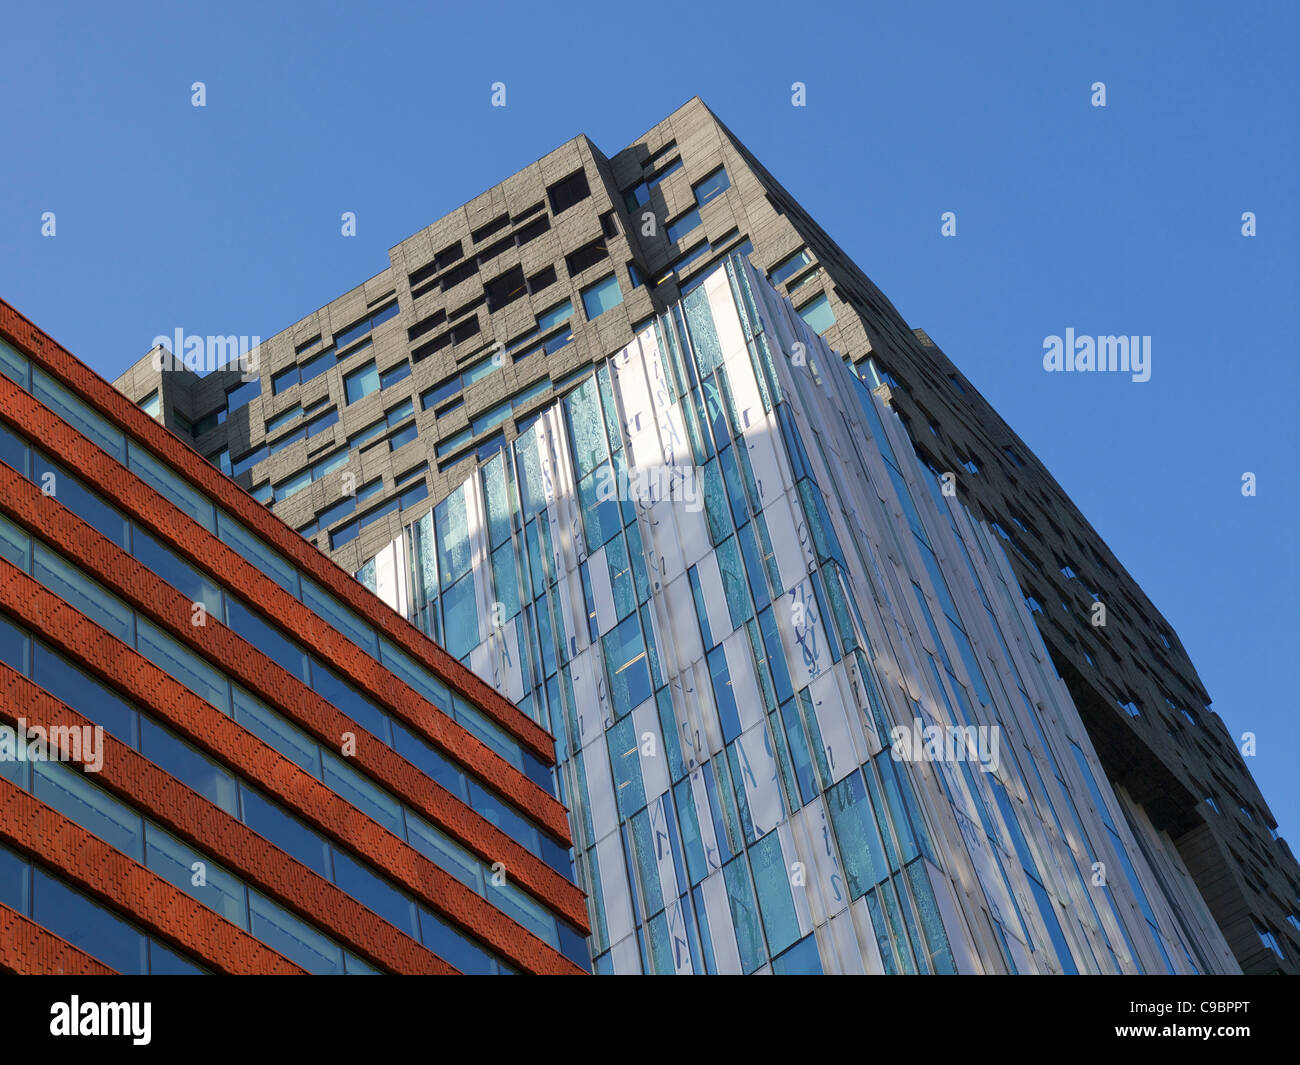 L'architecture contemporaine sur le Zuidas quartier financier d'Amsterdam, Pays-Bas Banque D'Images